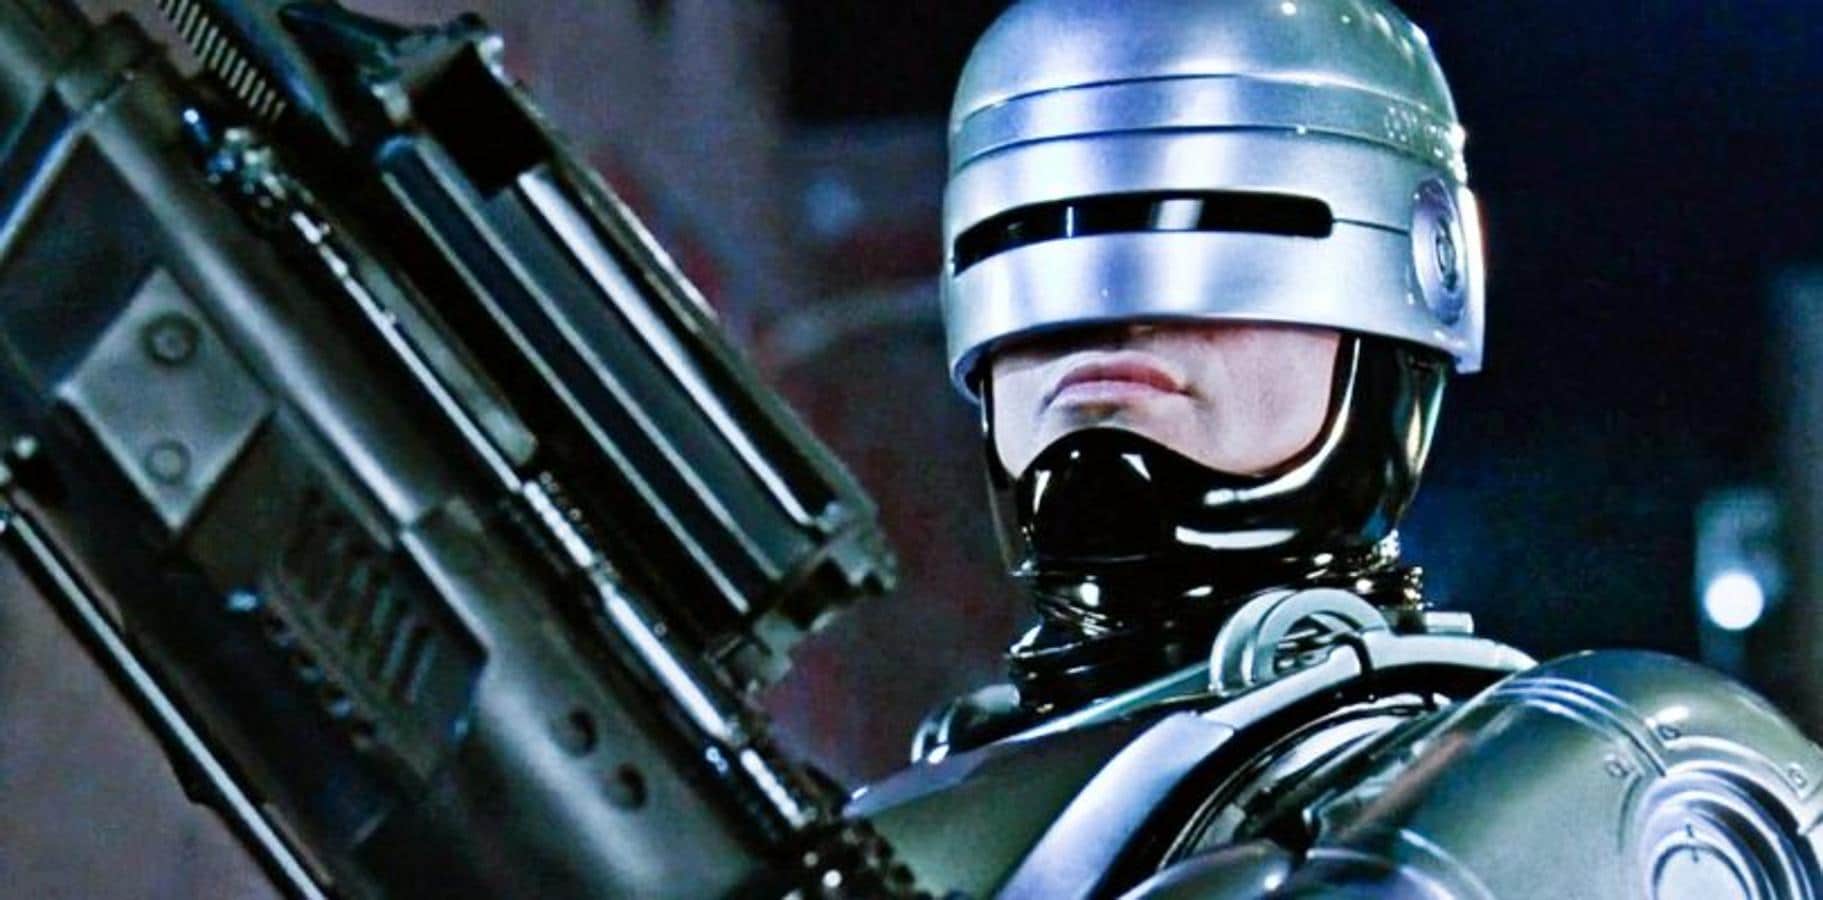 'RoboCop' (1987). Ambientada en una sociedad futura. Alex J. Murphy, agente de policía de Detroit, es asesinado en acto de servicio. Para acabar con la delincuencia en la ciudad, las autoridades aprueban la creación de una máquina letal, mitad robot, mitad hombre, a la que llaman Robocop, y para fabricarla utilizan el cuerpo de Murphy.